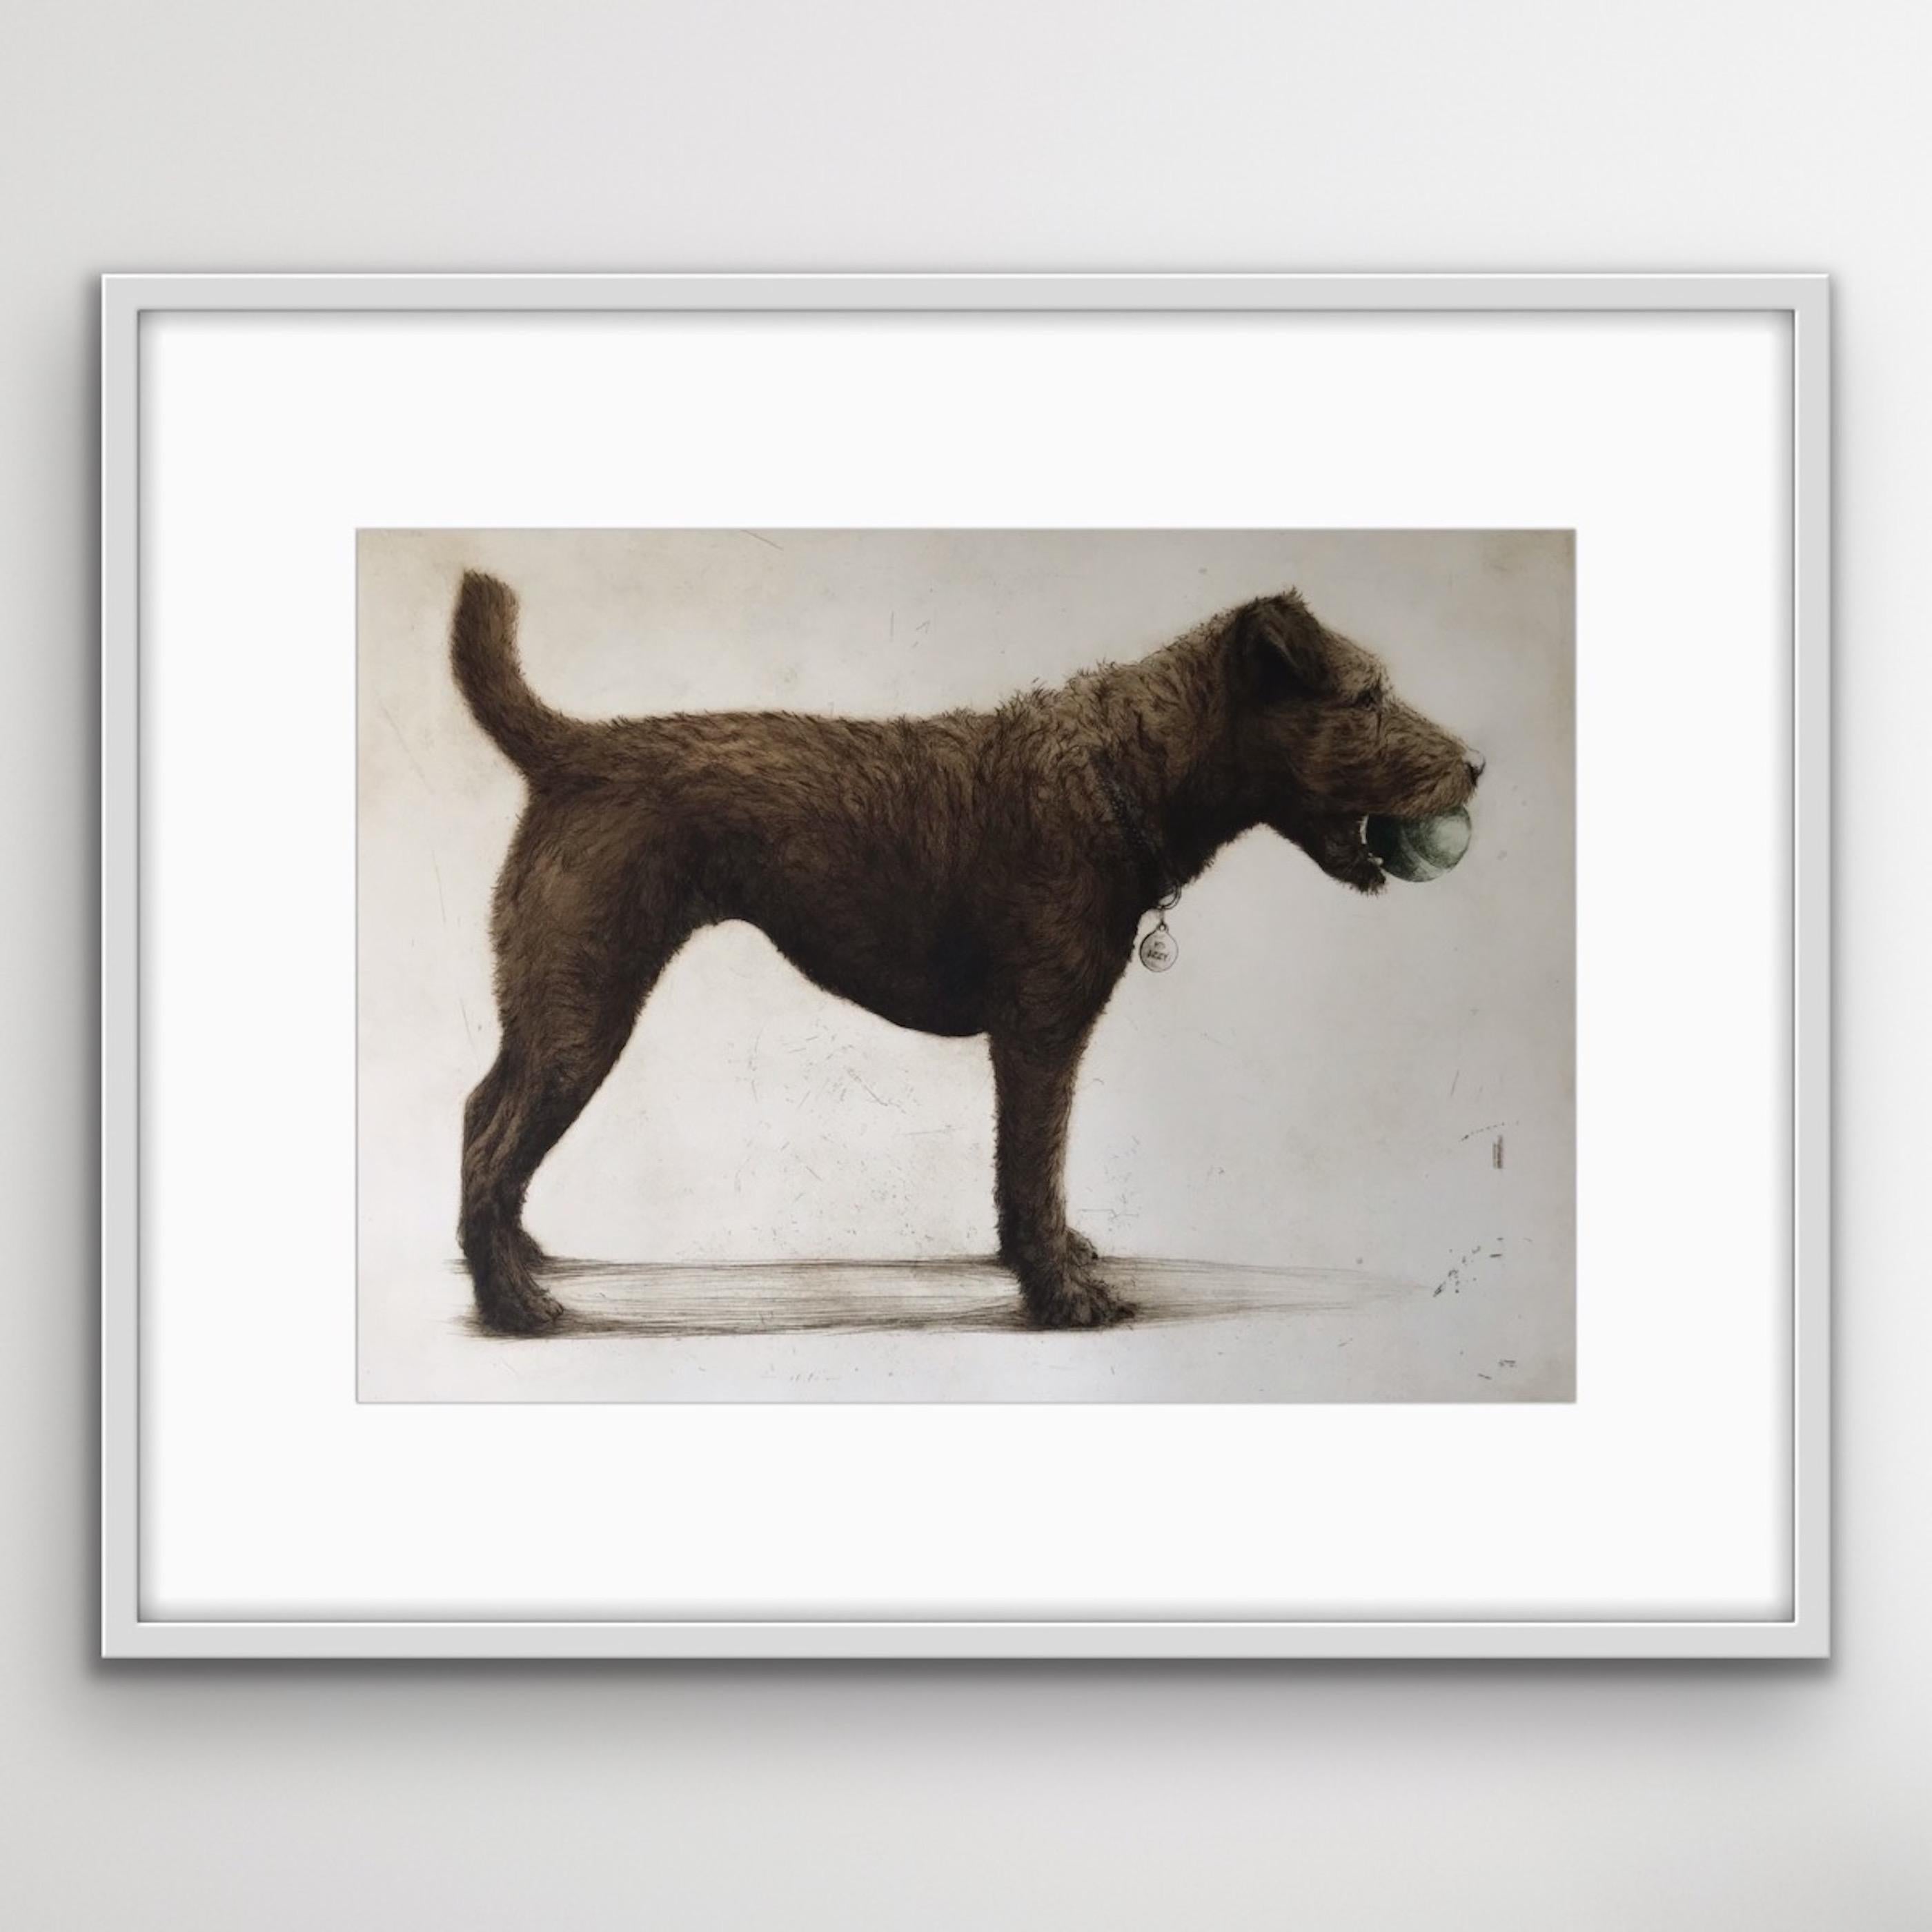 Izzy, ein charmanter, charaktervoller Terrier, steht wachsam da und hält ihren Ball im Maul. Farbradierung, handgefertigt und gedruckt von der Künstlerin.
Helen Fay's Kunst zum Verkauf online und in unserer Galerie bei Wychwood Art. Tiere standen